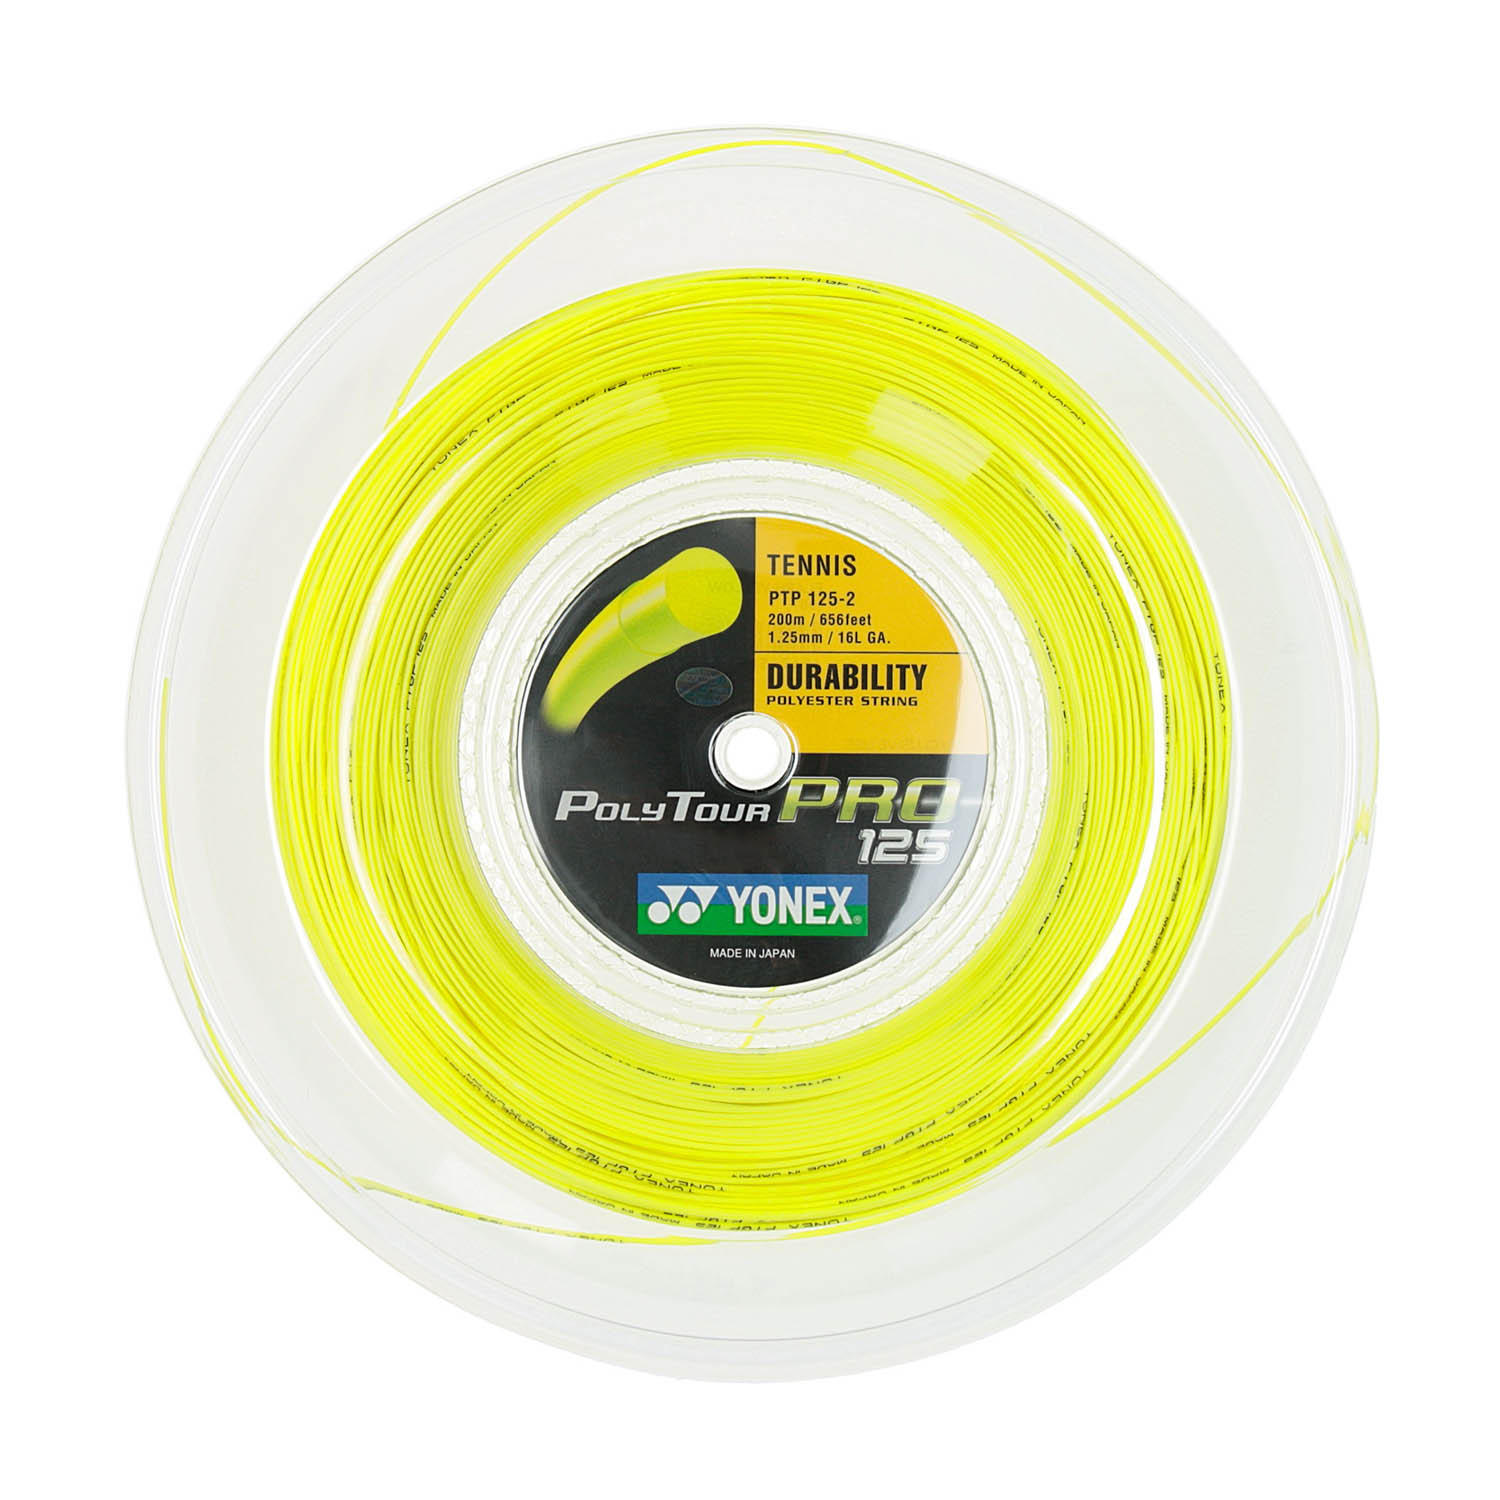 YONEX Poly Tour Pro Flash Yellow Tennis String 